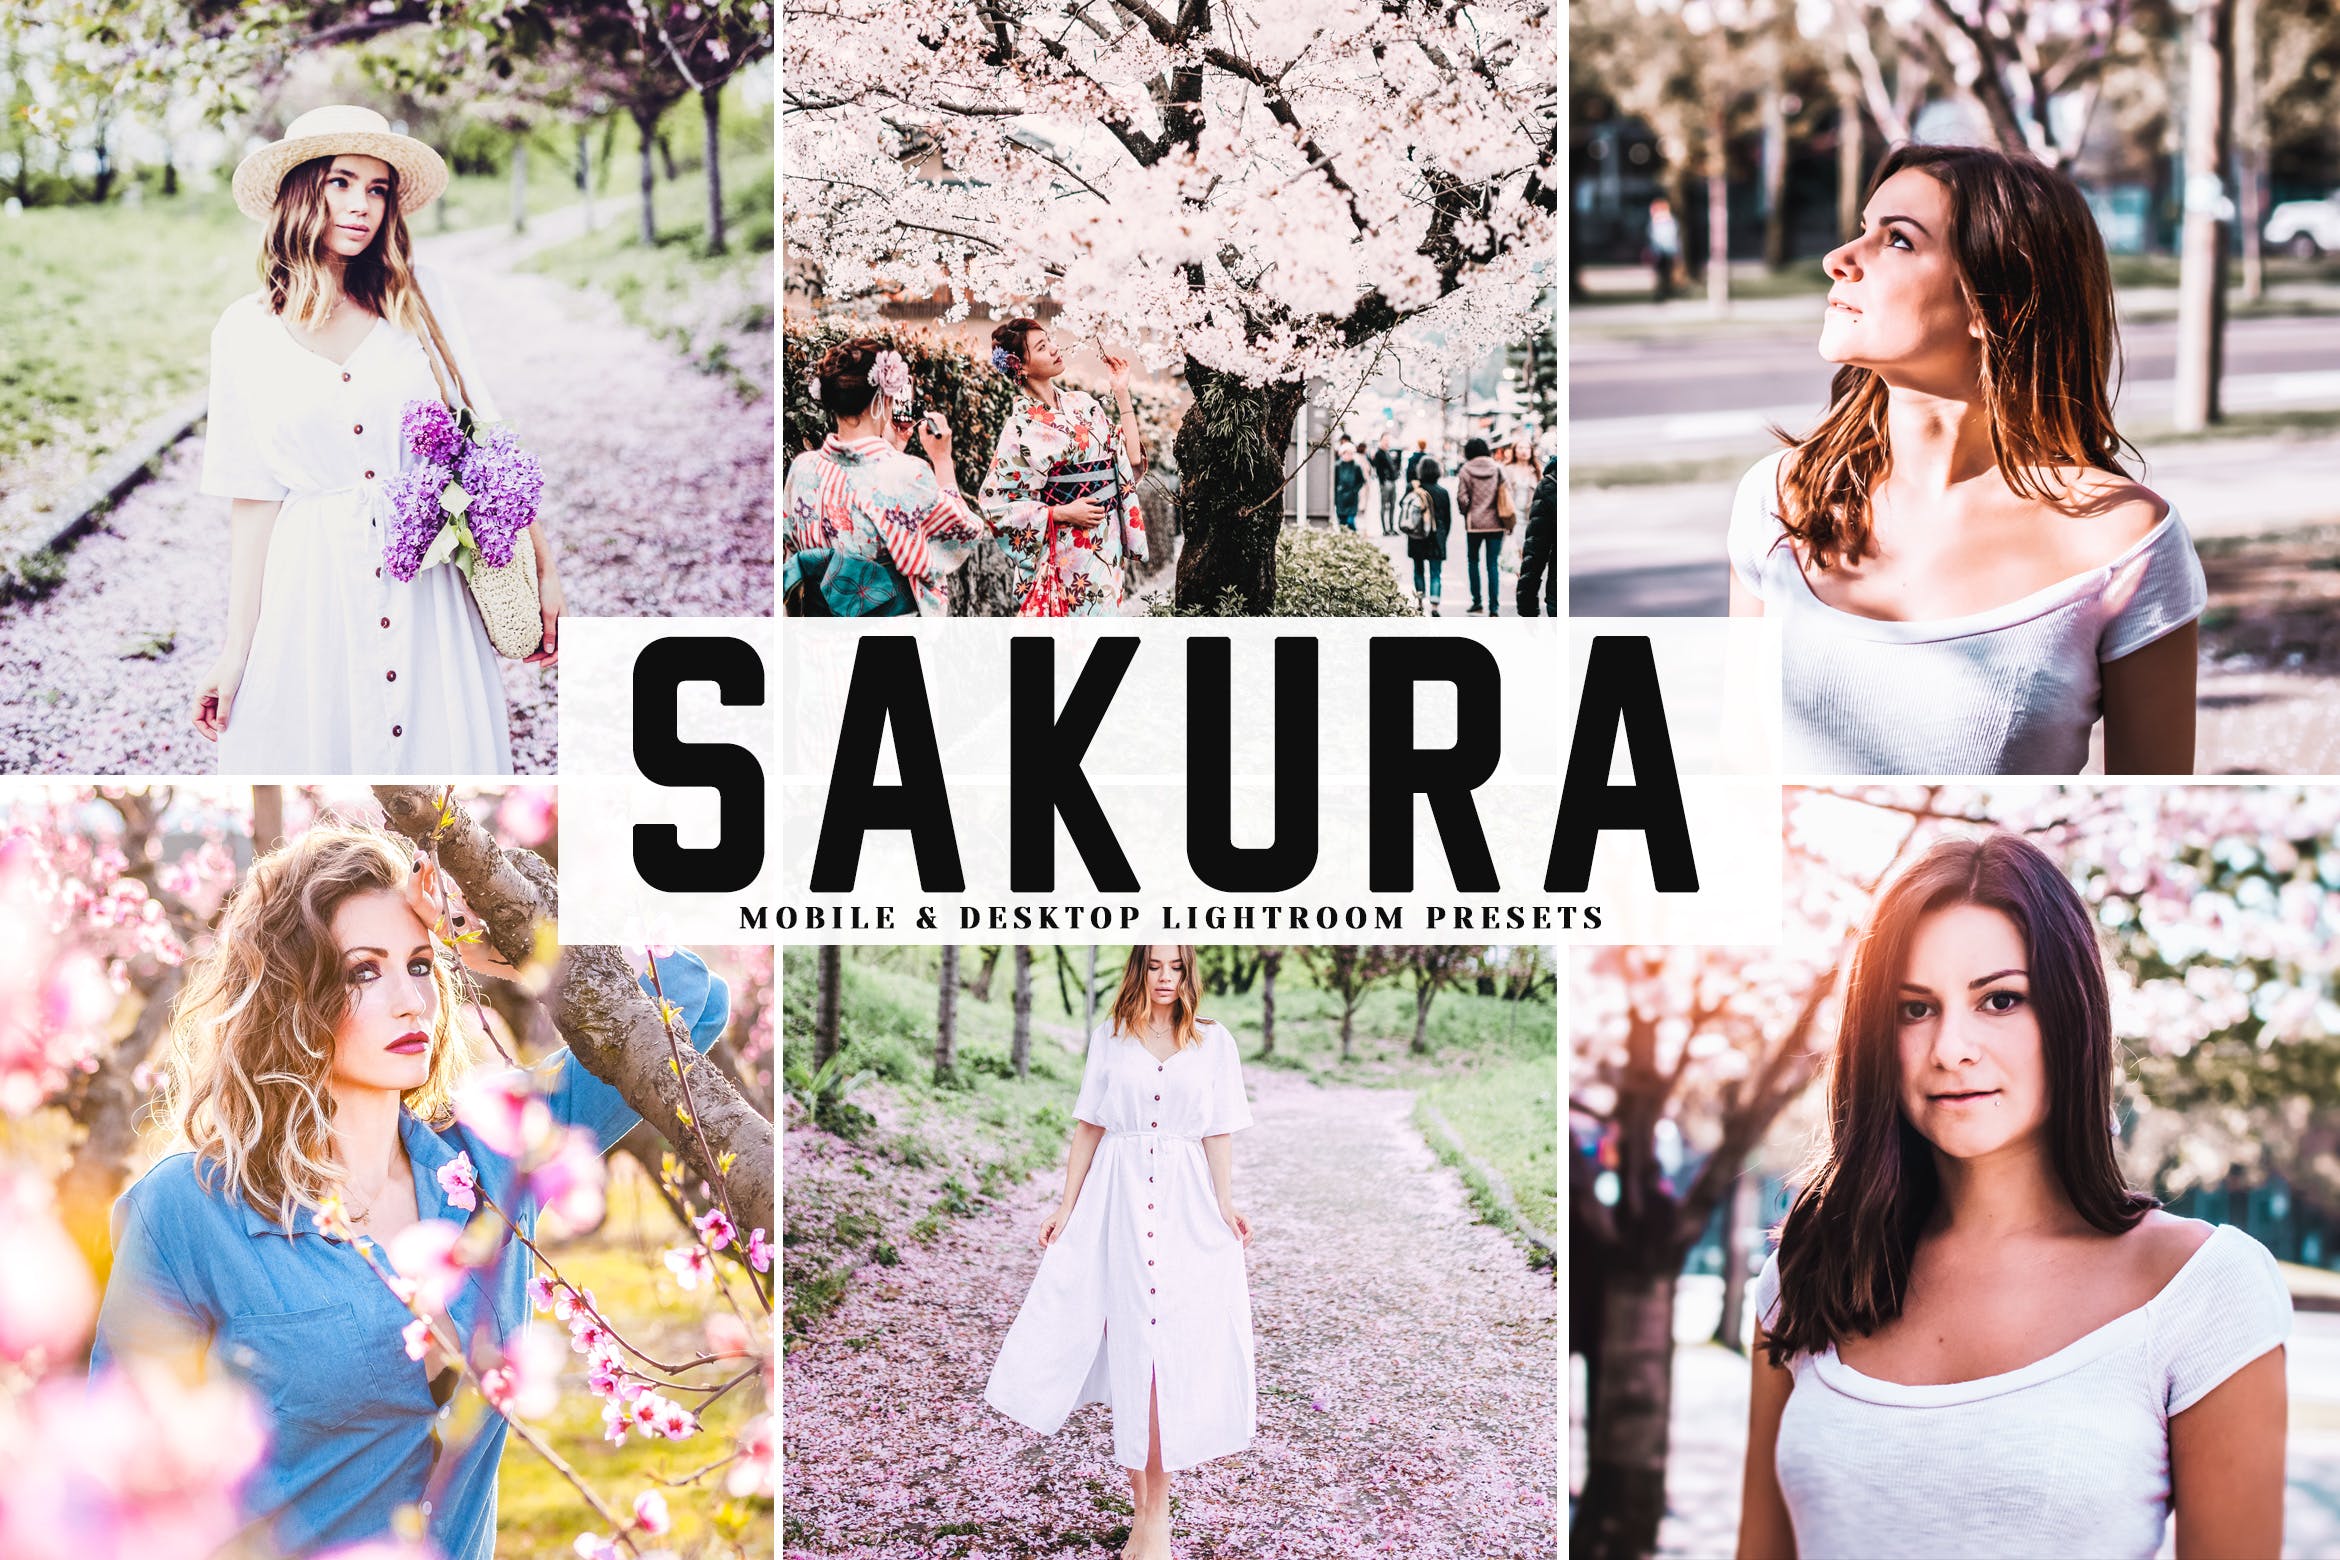 低饱和度柔和色调照片调色滤镜16图库精选LR预设 Sakura Mobile & Desktop Lightroom Presets插图